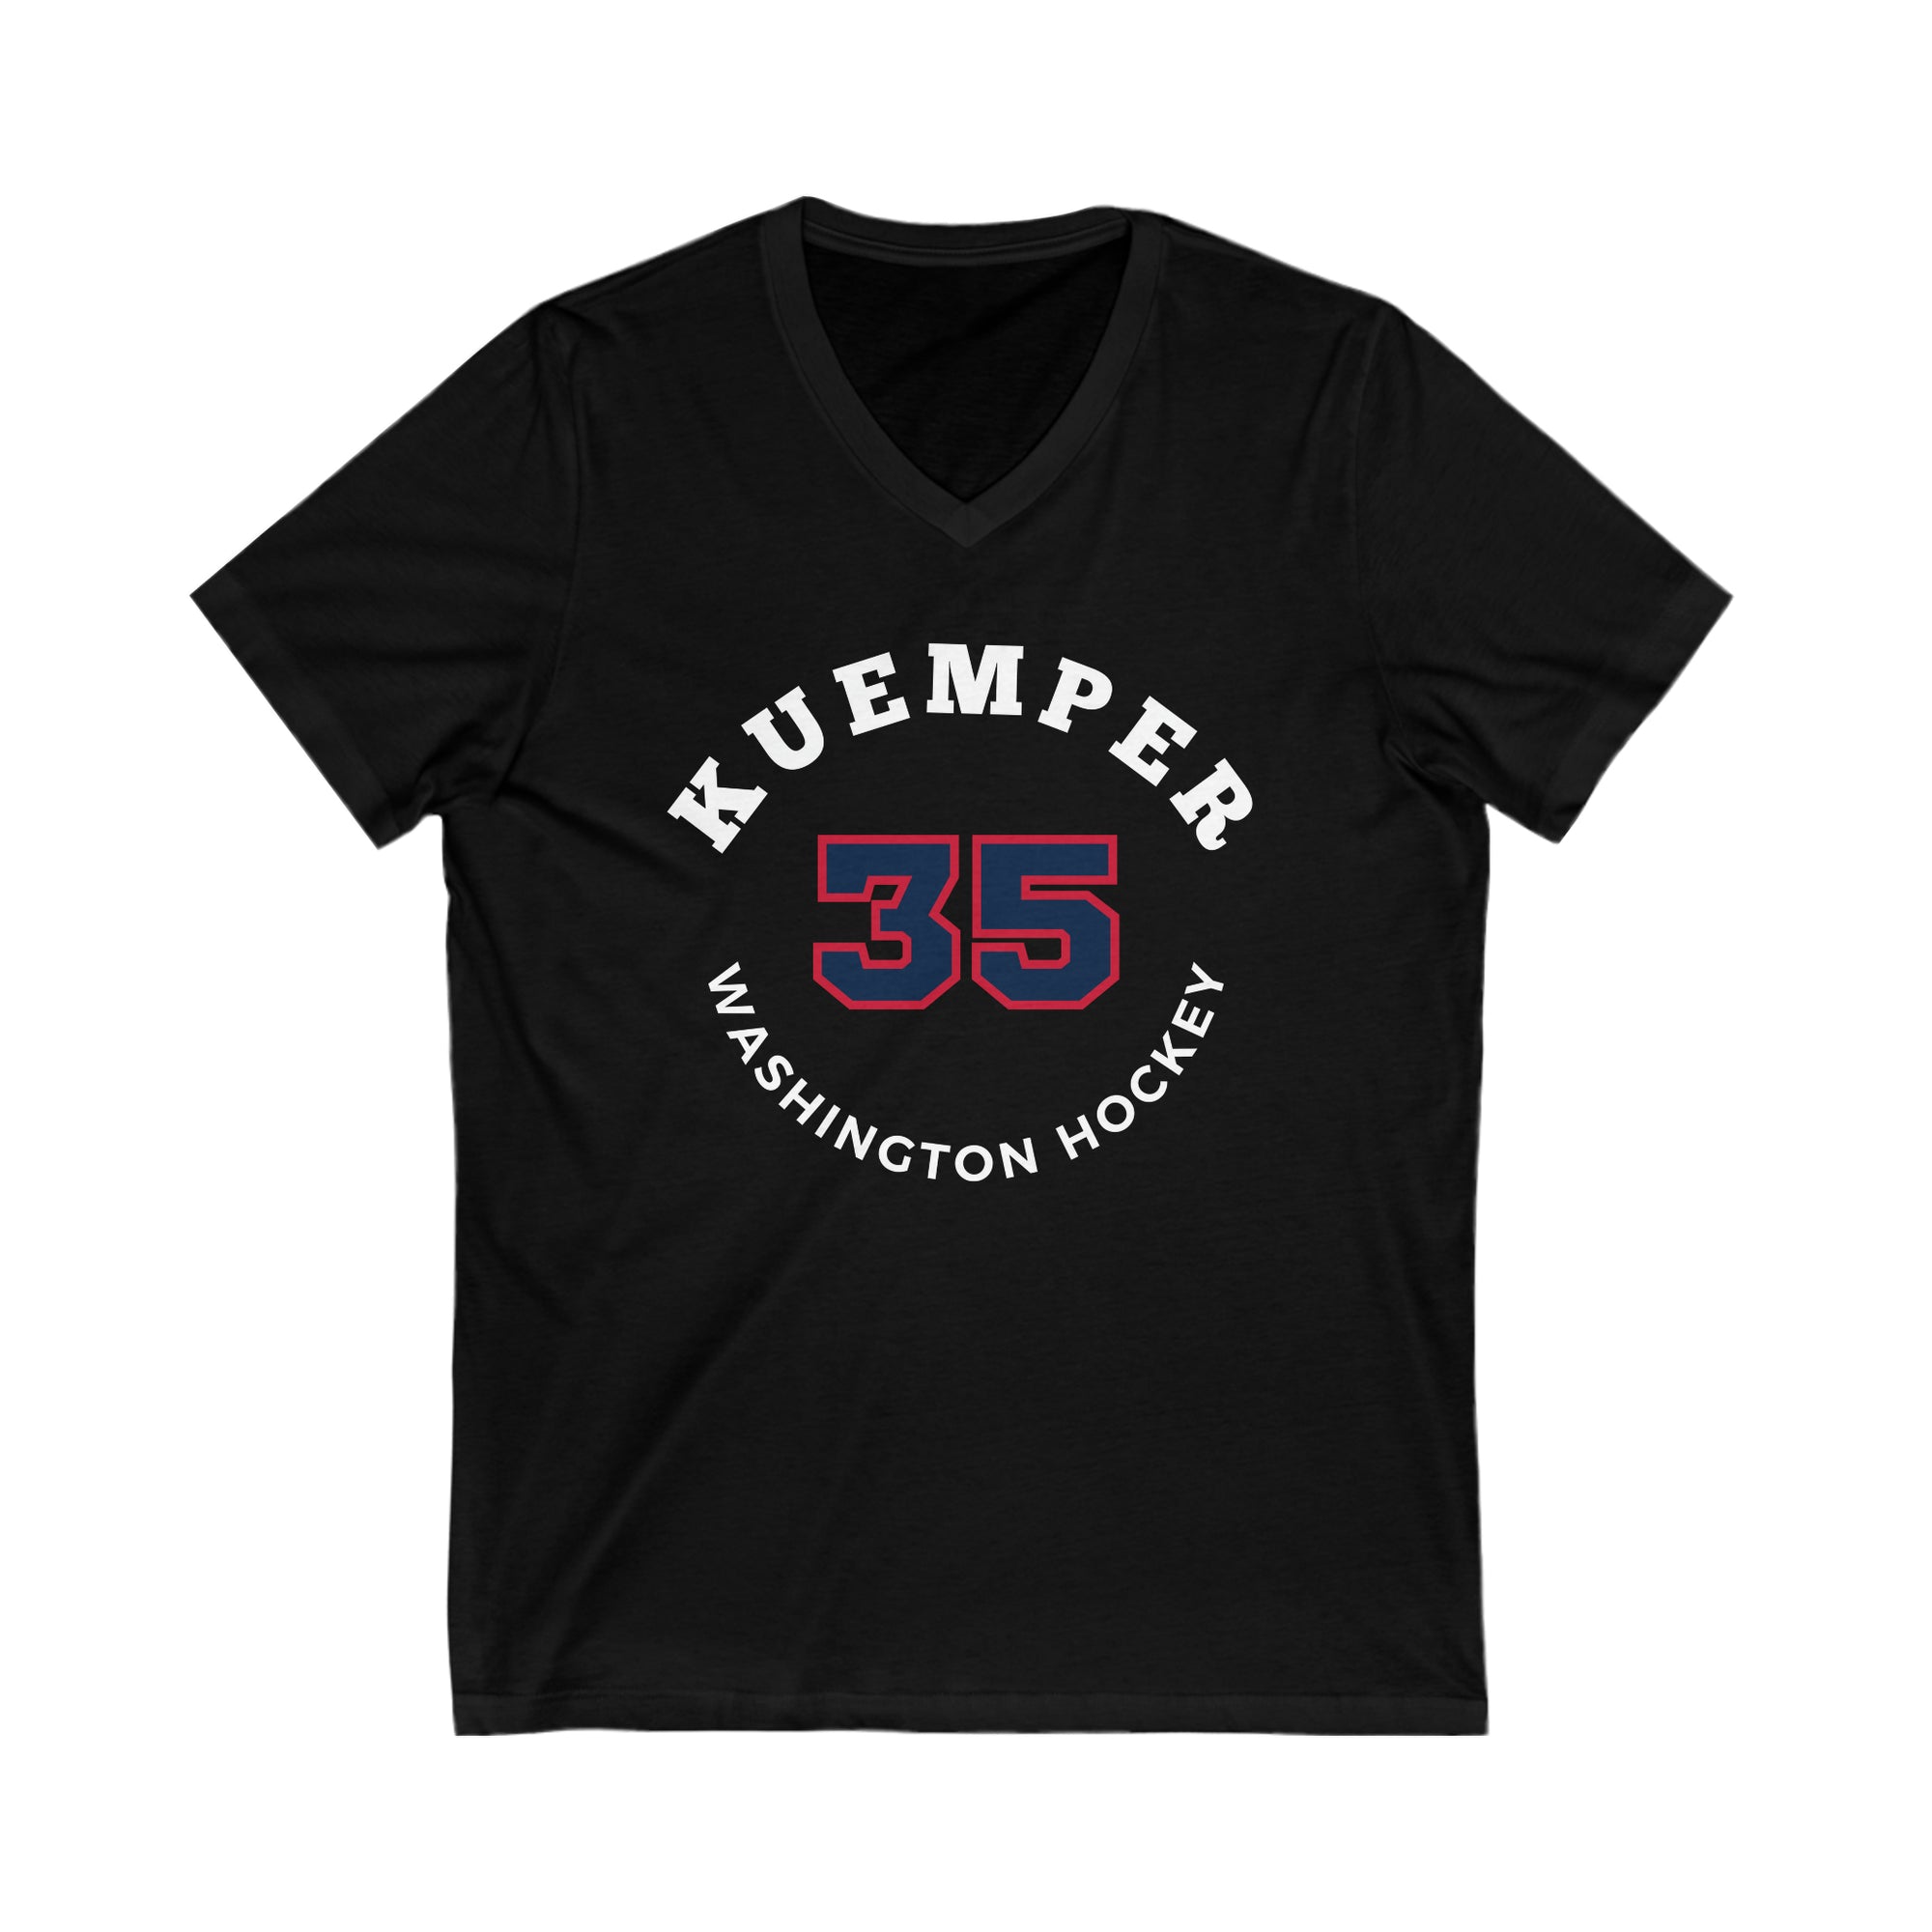 Kuemper 35 Washington Hockey Number Arch Design Unisex V-Neck Tee